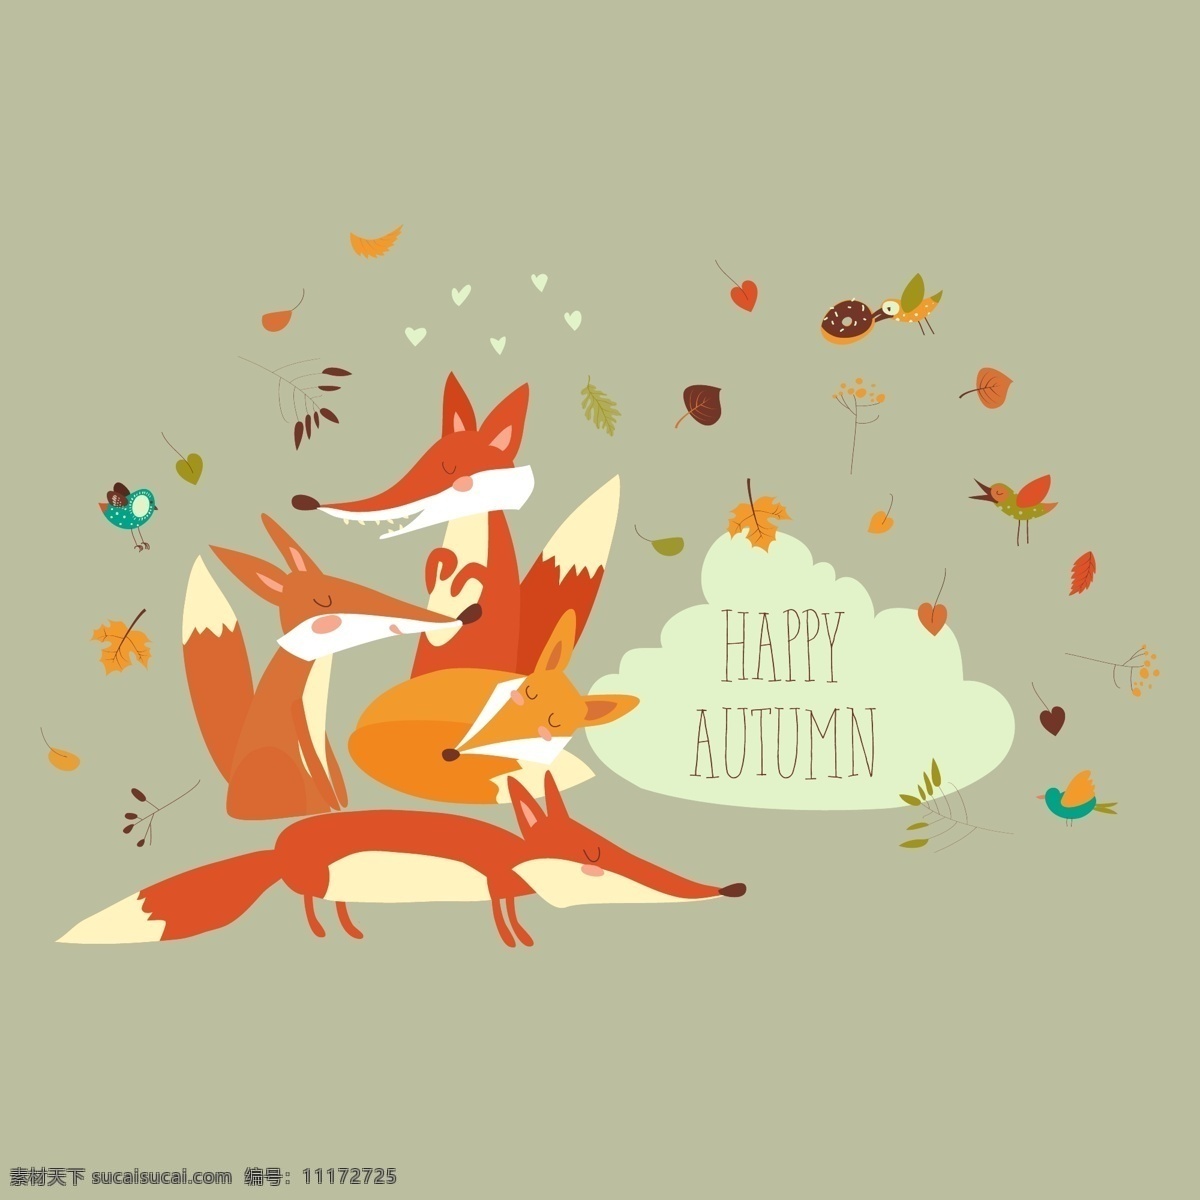 可爱 森林 狐狸 矢量 秋天 树叶 动物 卡通素材 可爱狐狸 免抠素材 秋天树叶 矢量插图